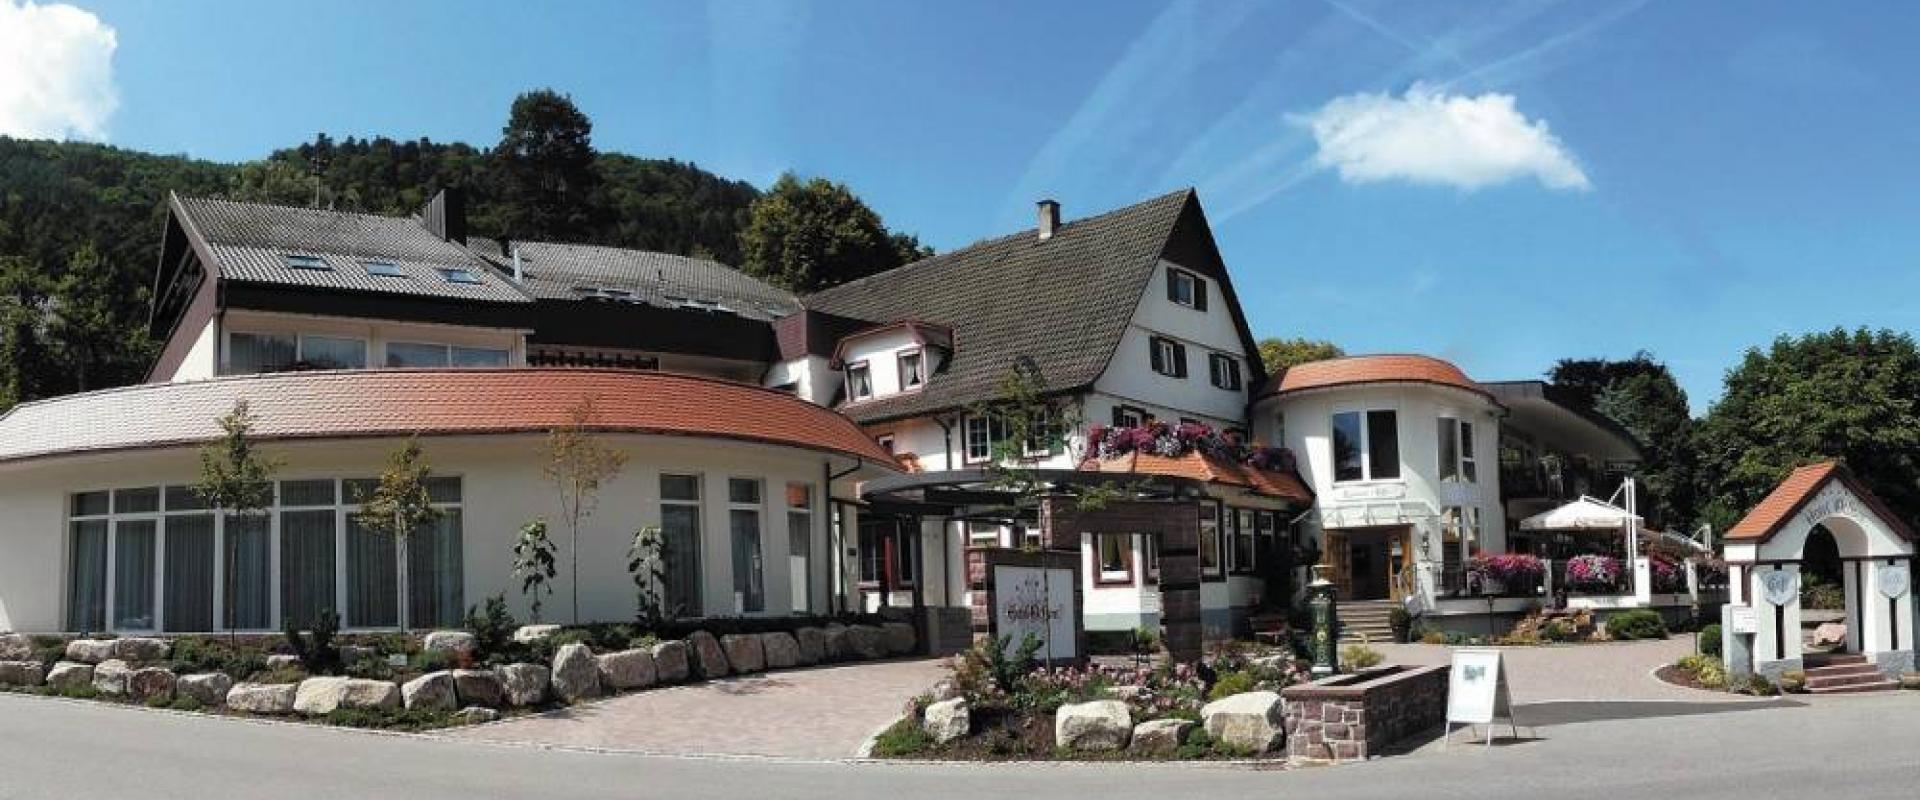 12861 Motorrad Hotel Ochsen im Schwarzwald.jpg